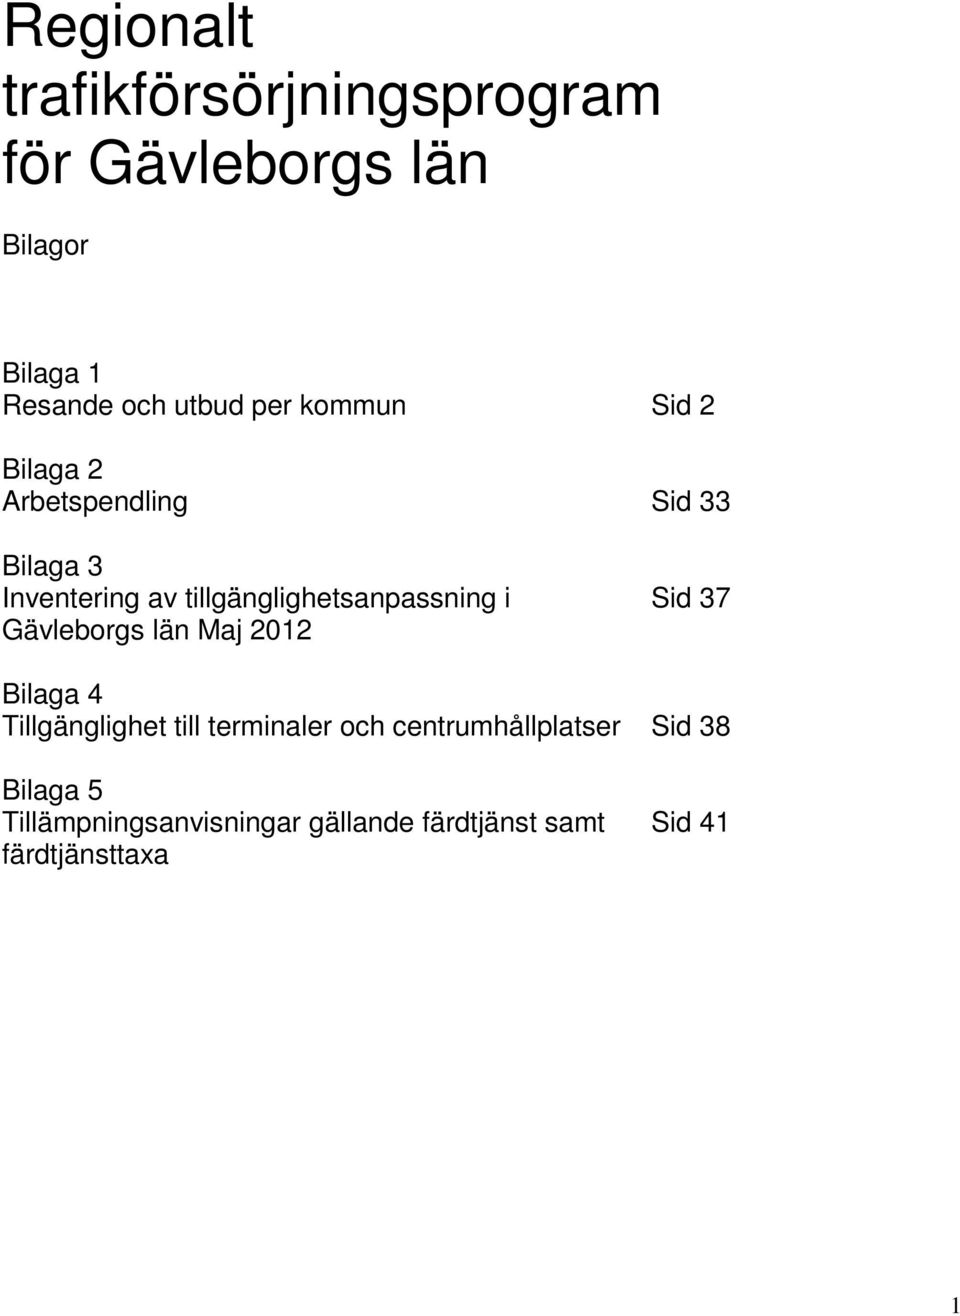 tillgänglighetsanpassning i Sid 37 Gävleborgs län Maj 2012 Bilaga 4 Tillgänglighet till